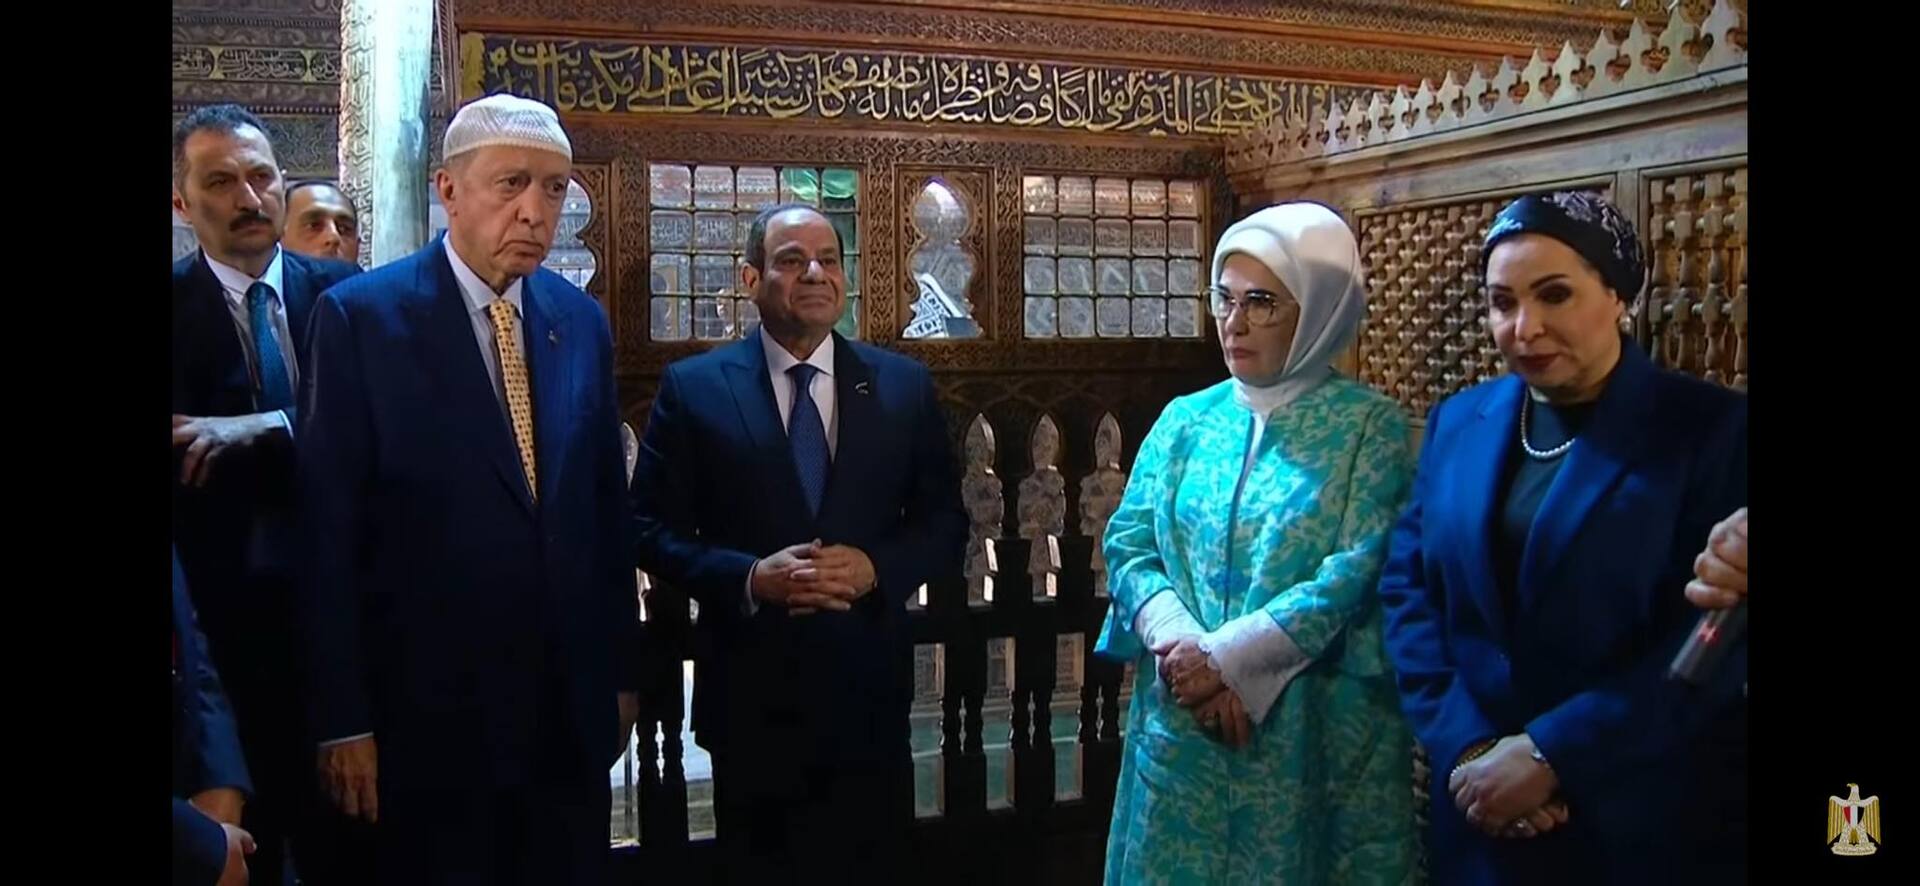 لماذا اختار أردوغان زيارة مسجد وضريح الإمام الشافعي مع السيسي؟